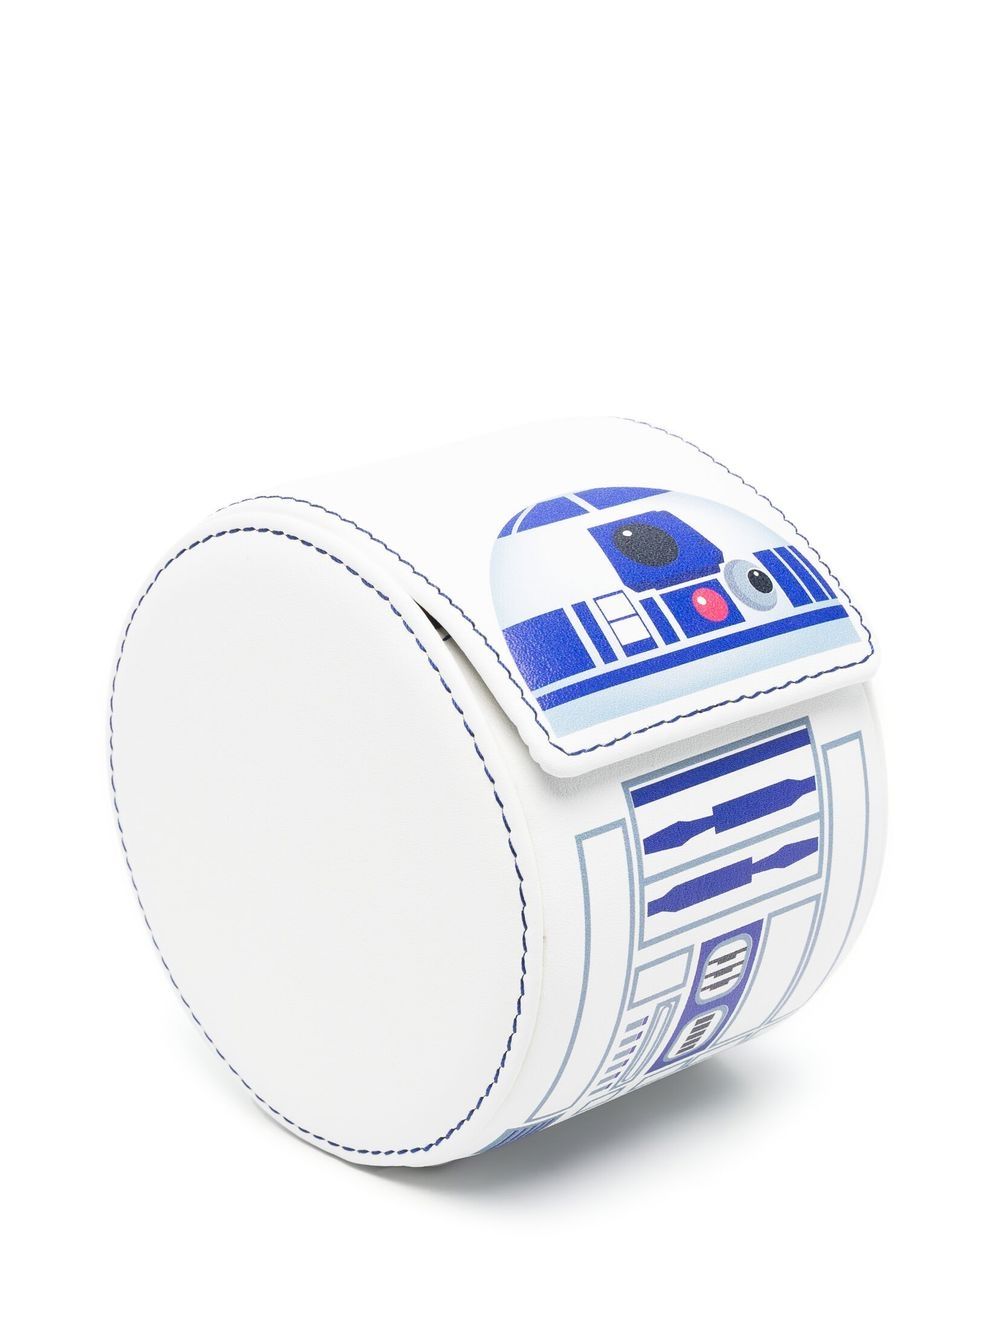 R2-D2™ watch roll